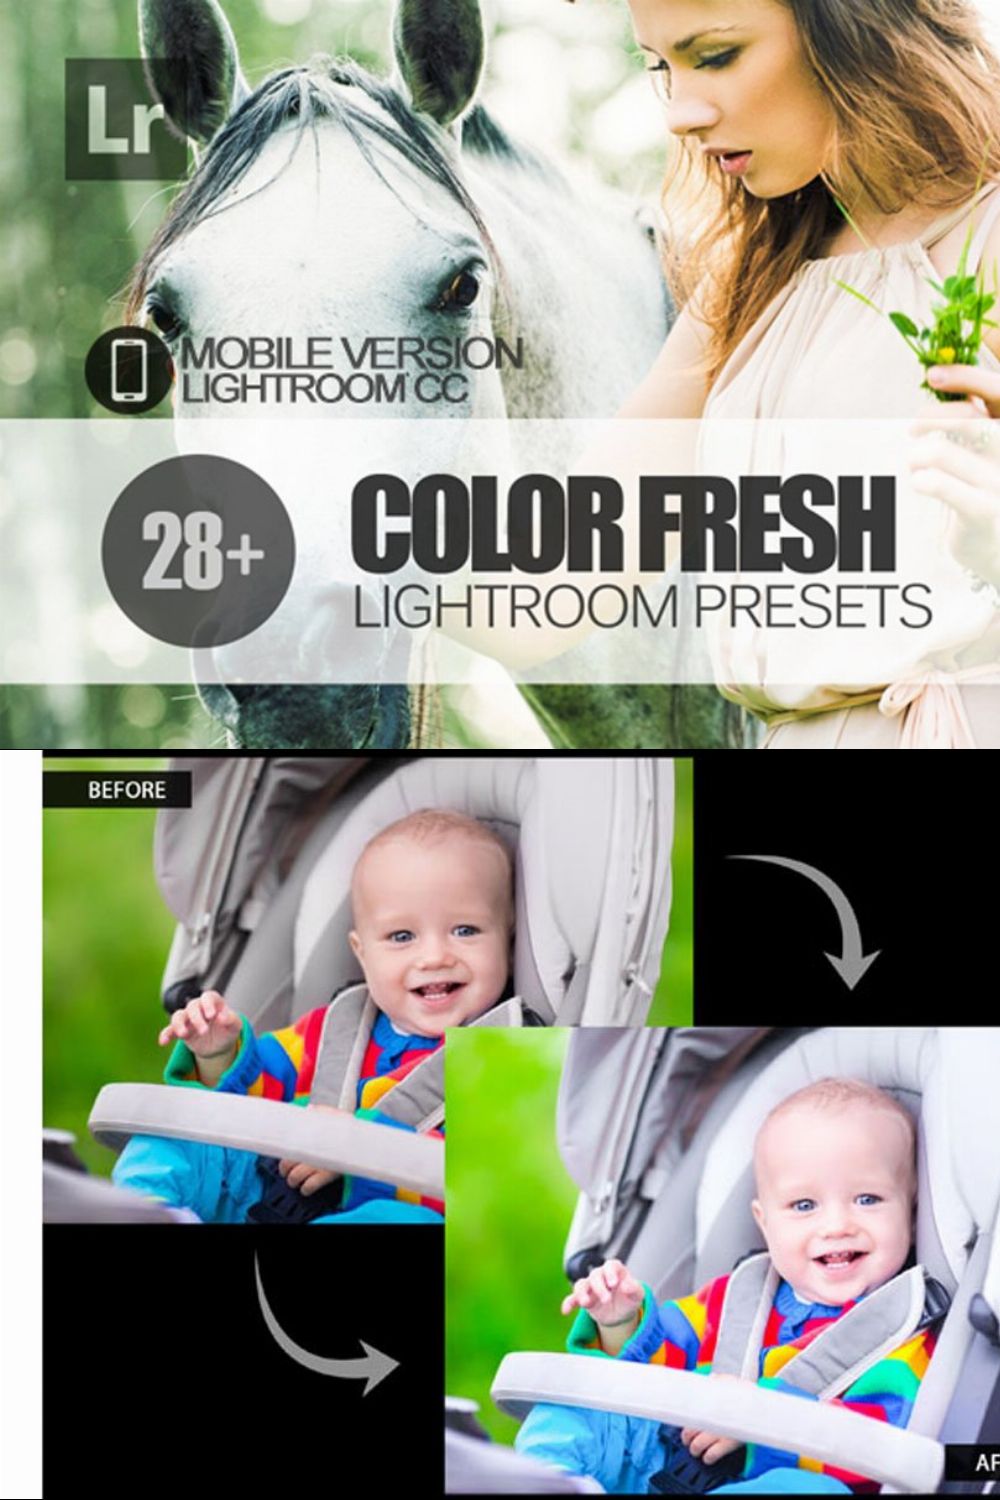 Color Fresh Lightroom Mobile Presets pinterest preview image.